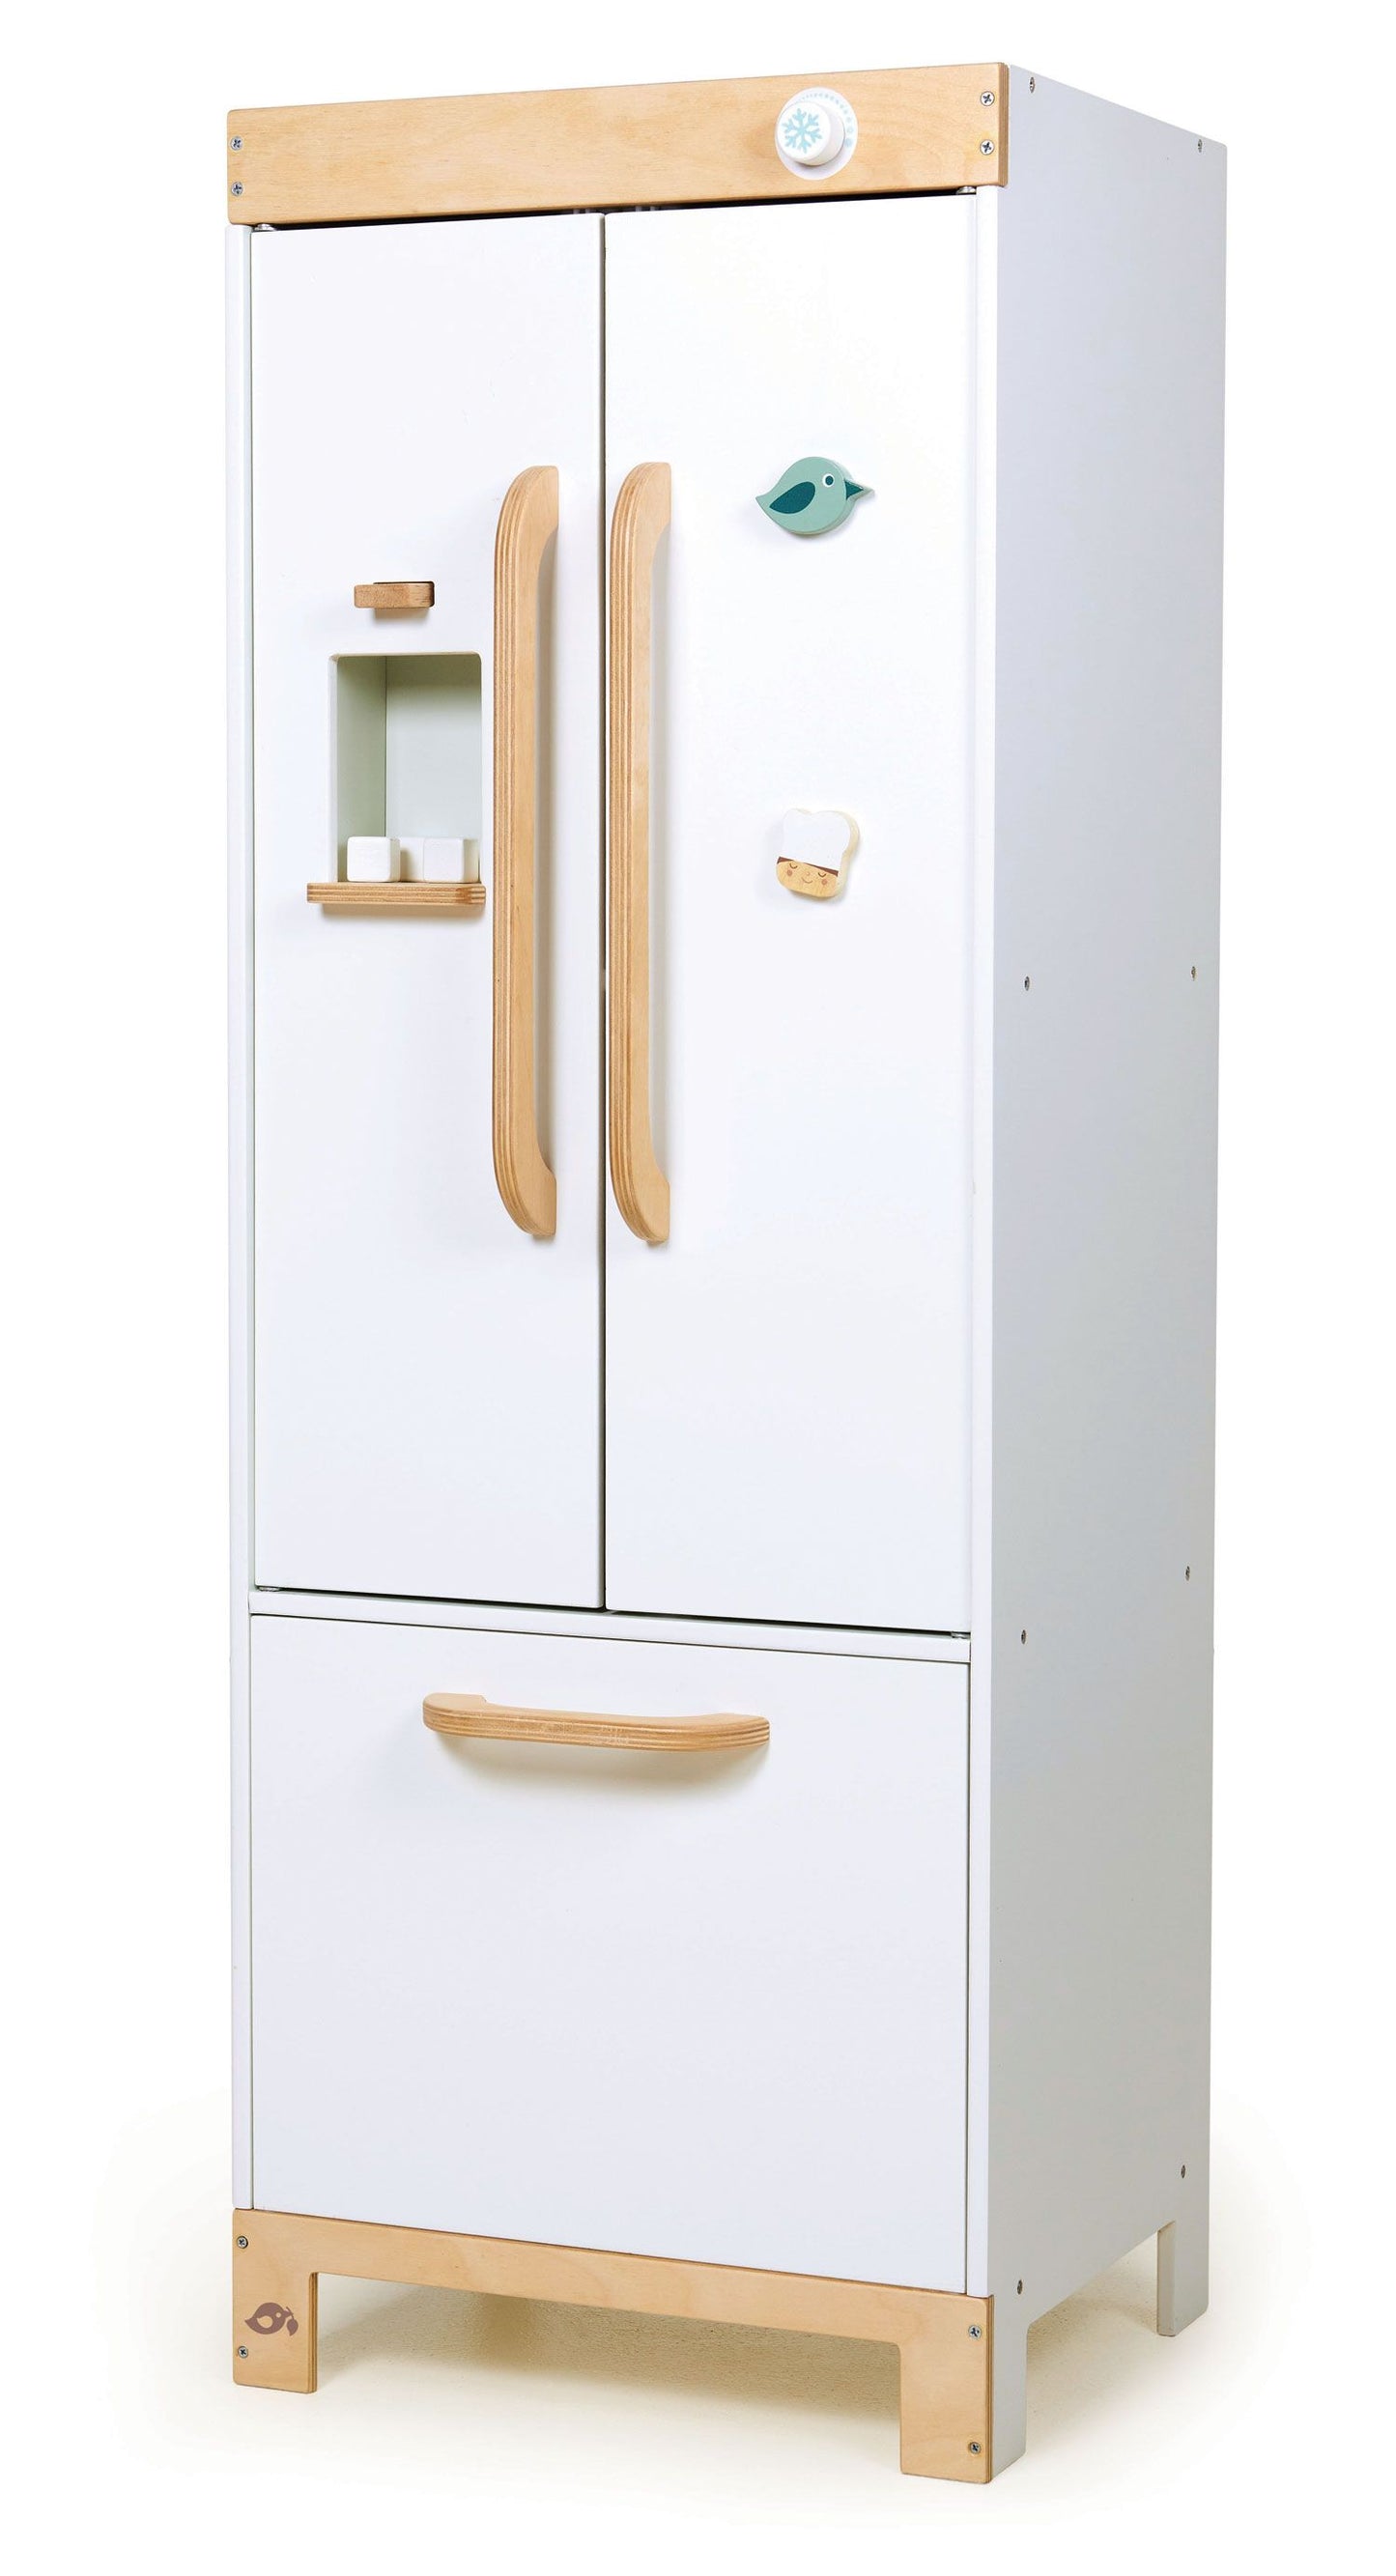 Tender Leaf Refrigerator